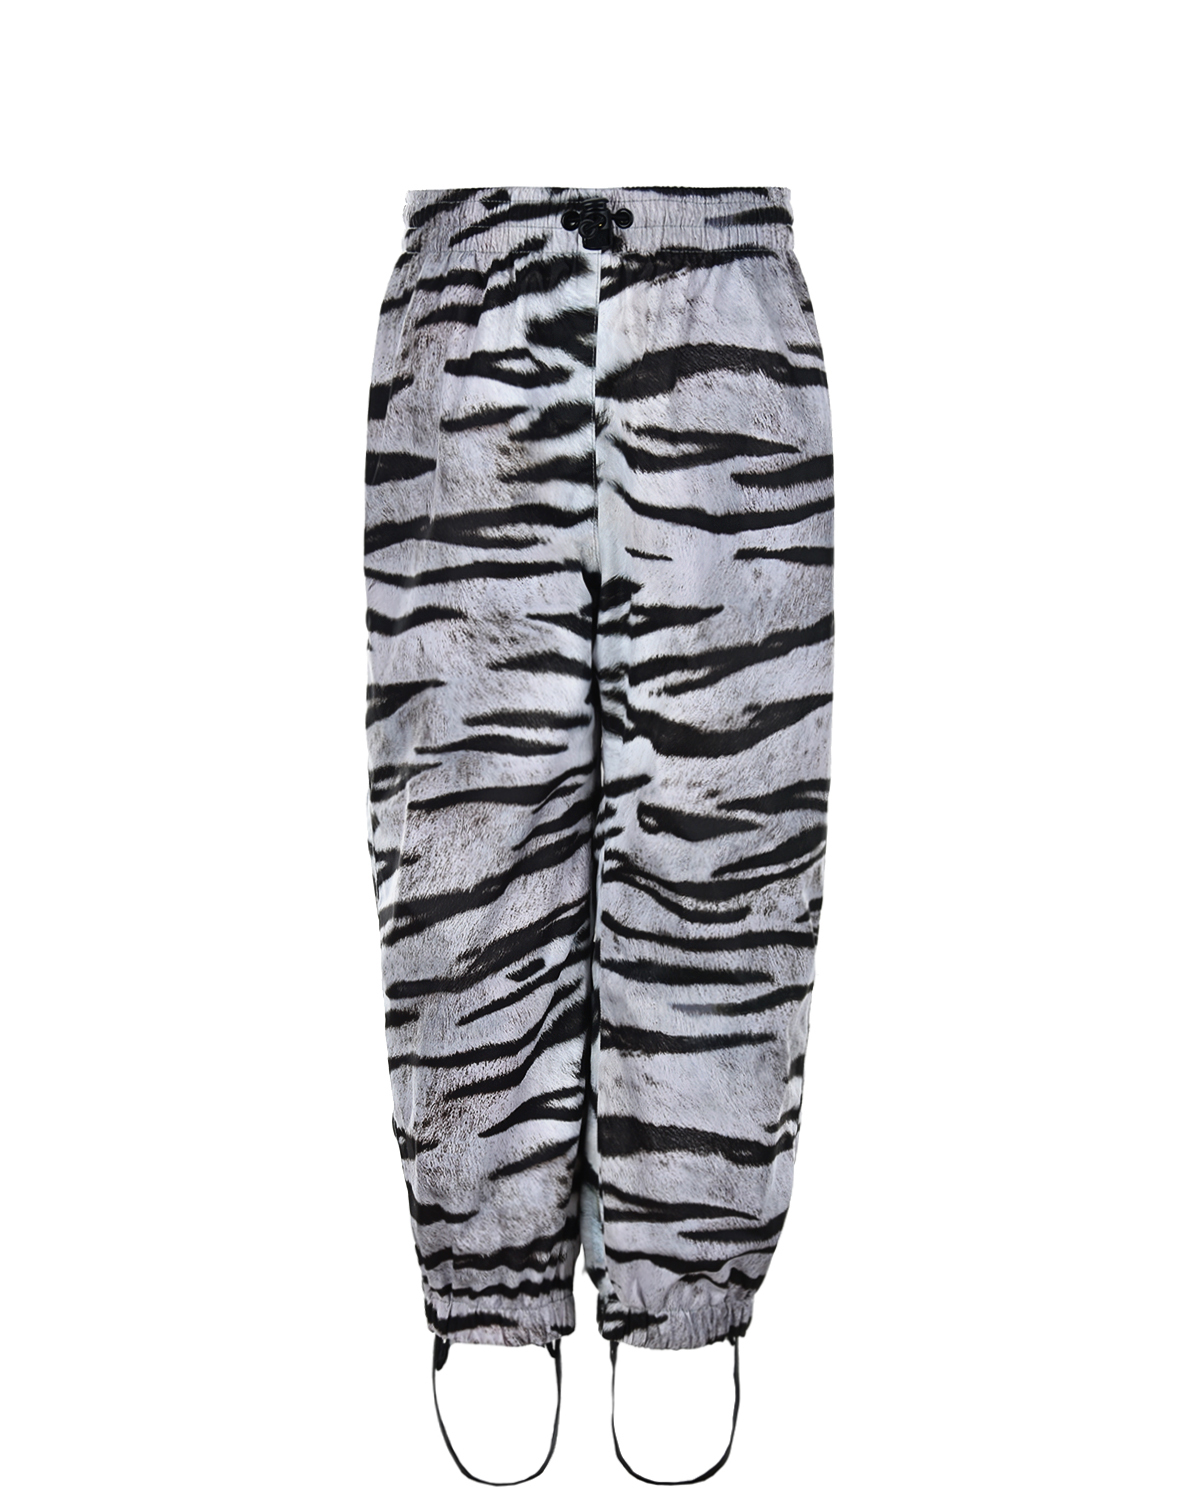 Мембранные брюки Waits "Tiger White" Molo детские, размер 98, цвет мультиколор